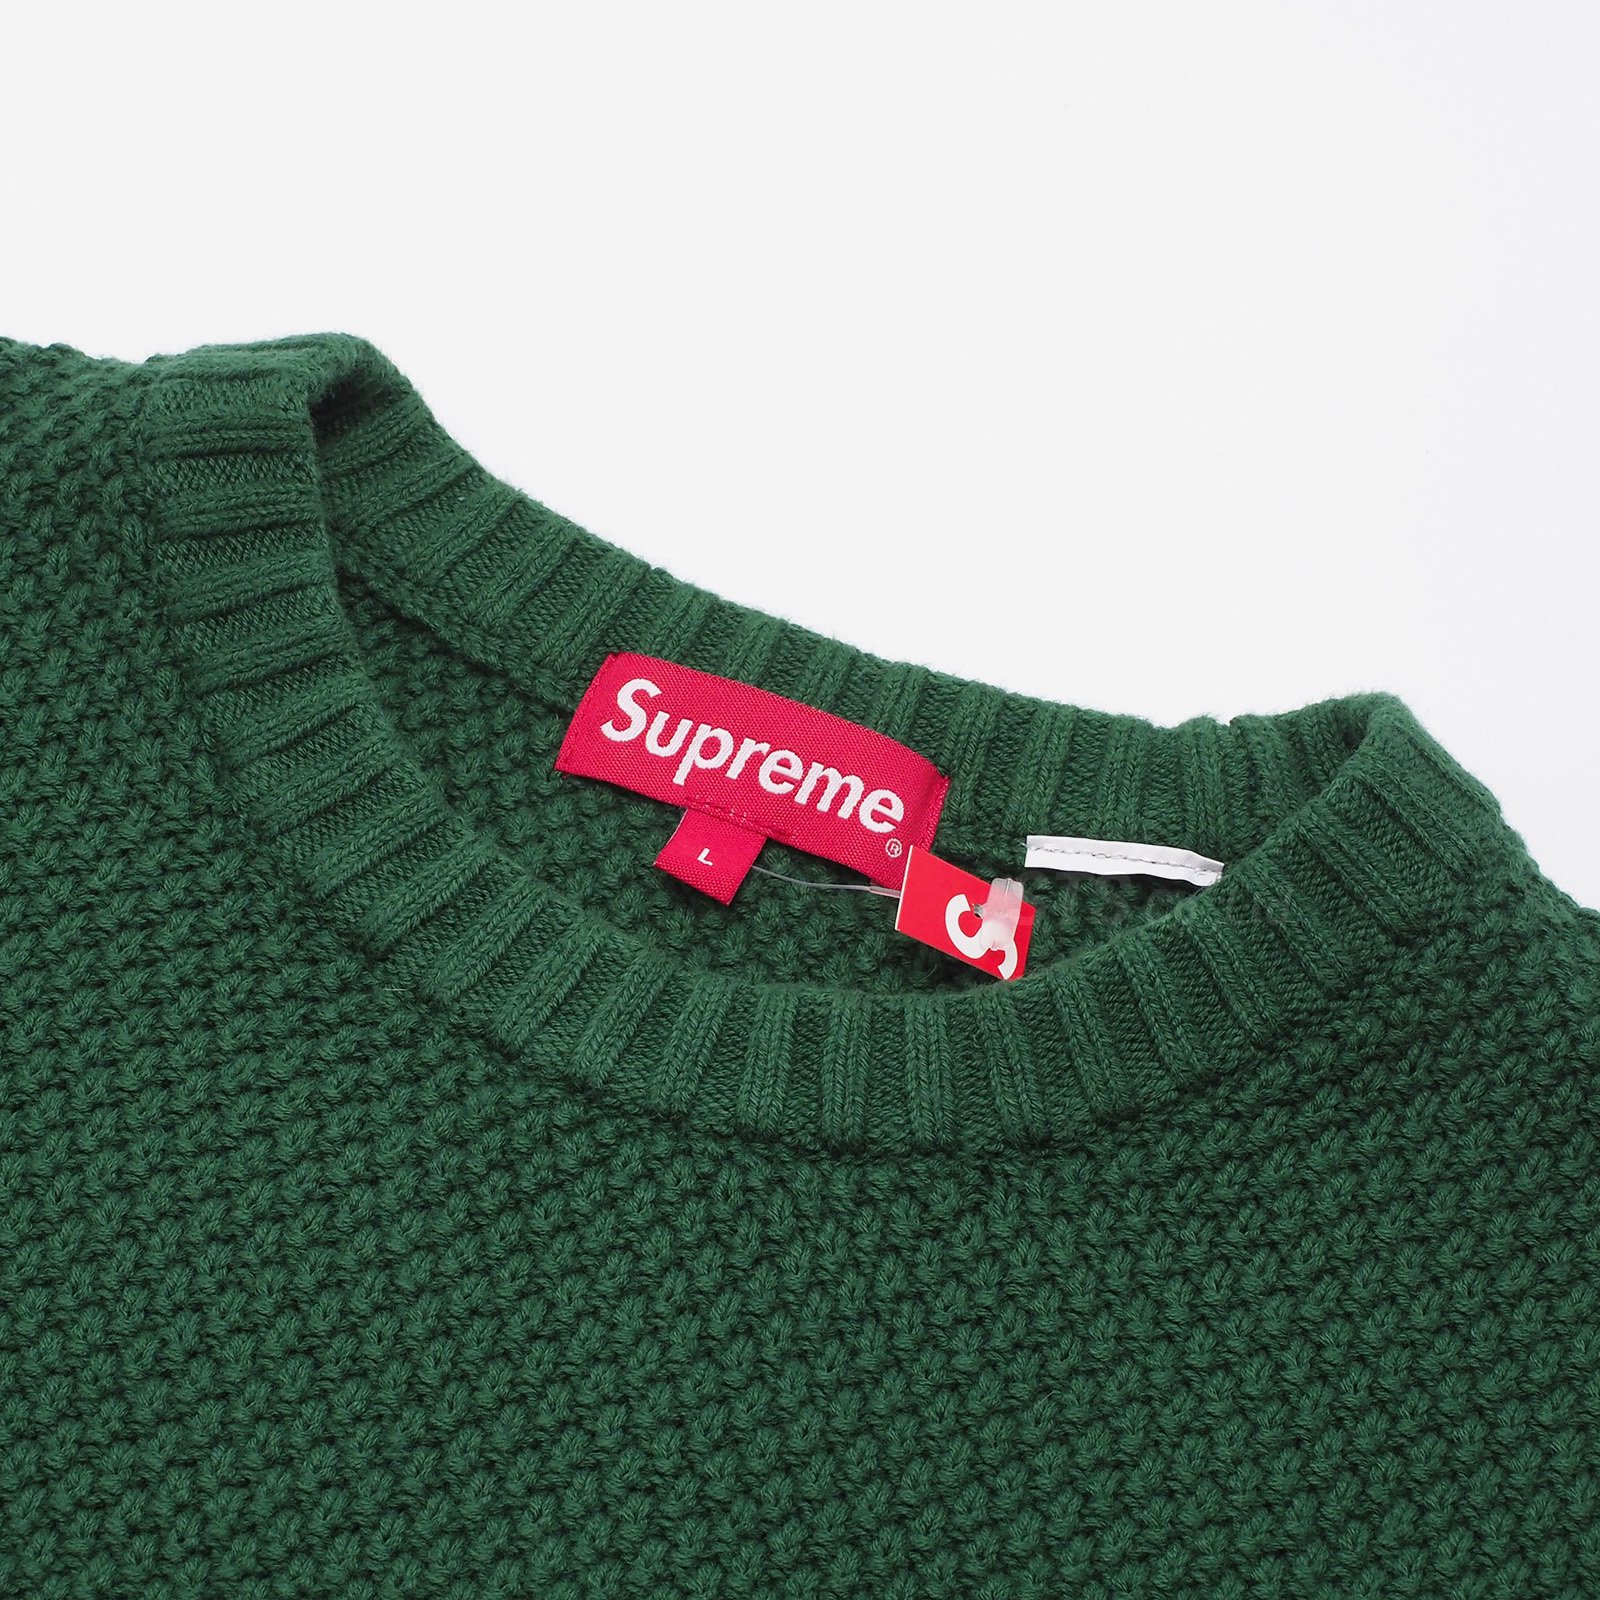 0円 [宅送] Supreme Textured Small Box Sweater Black